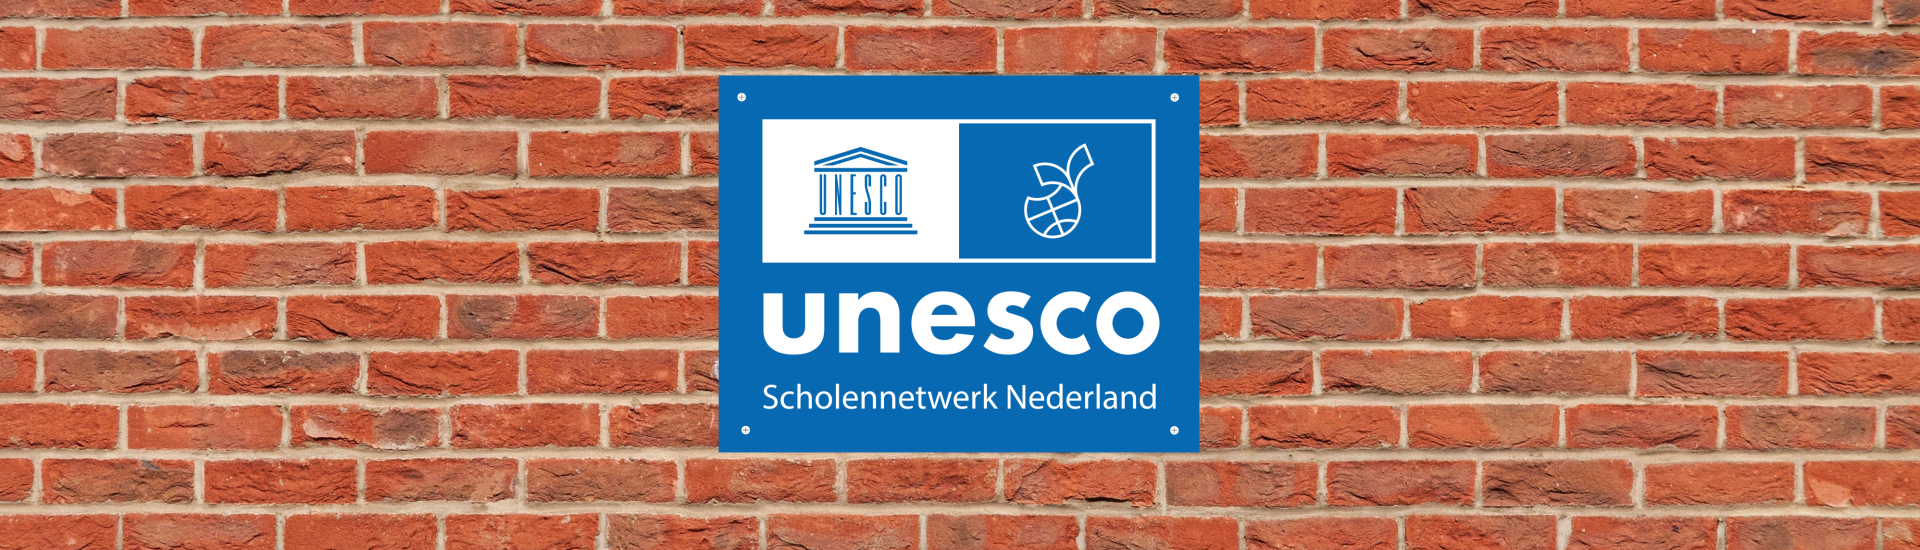 Unesco-scholenbordje op muur